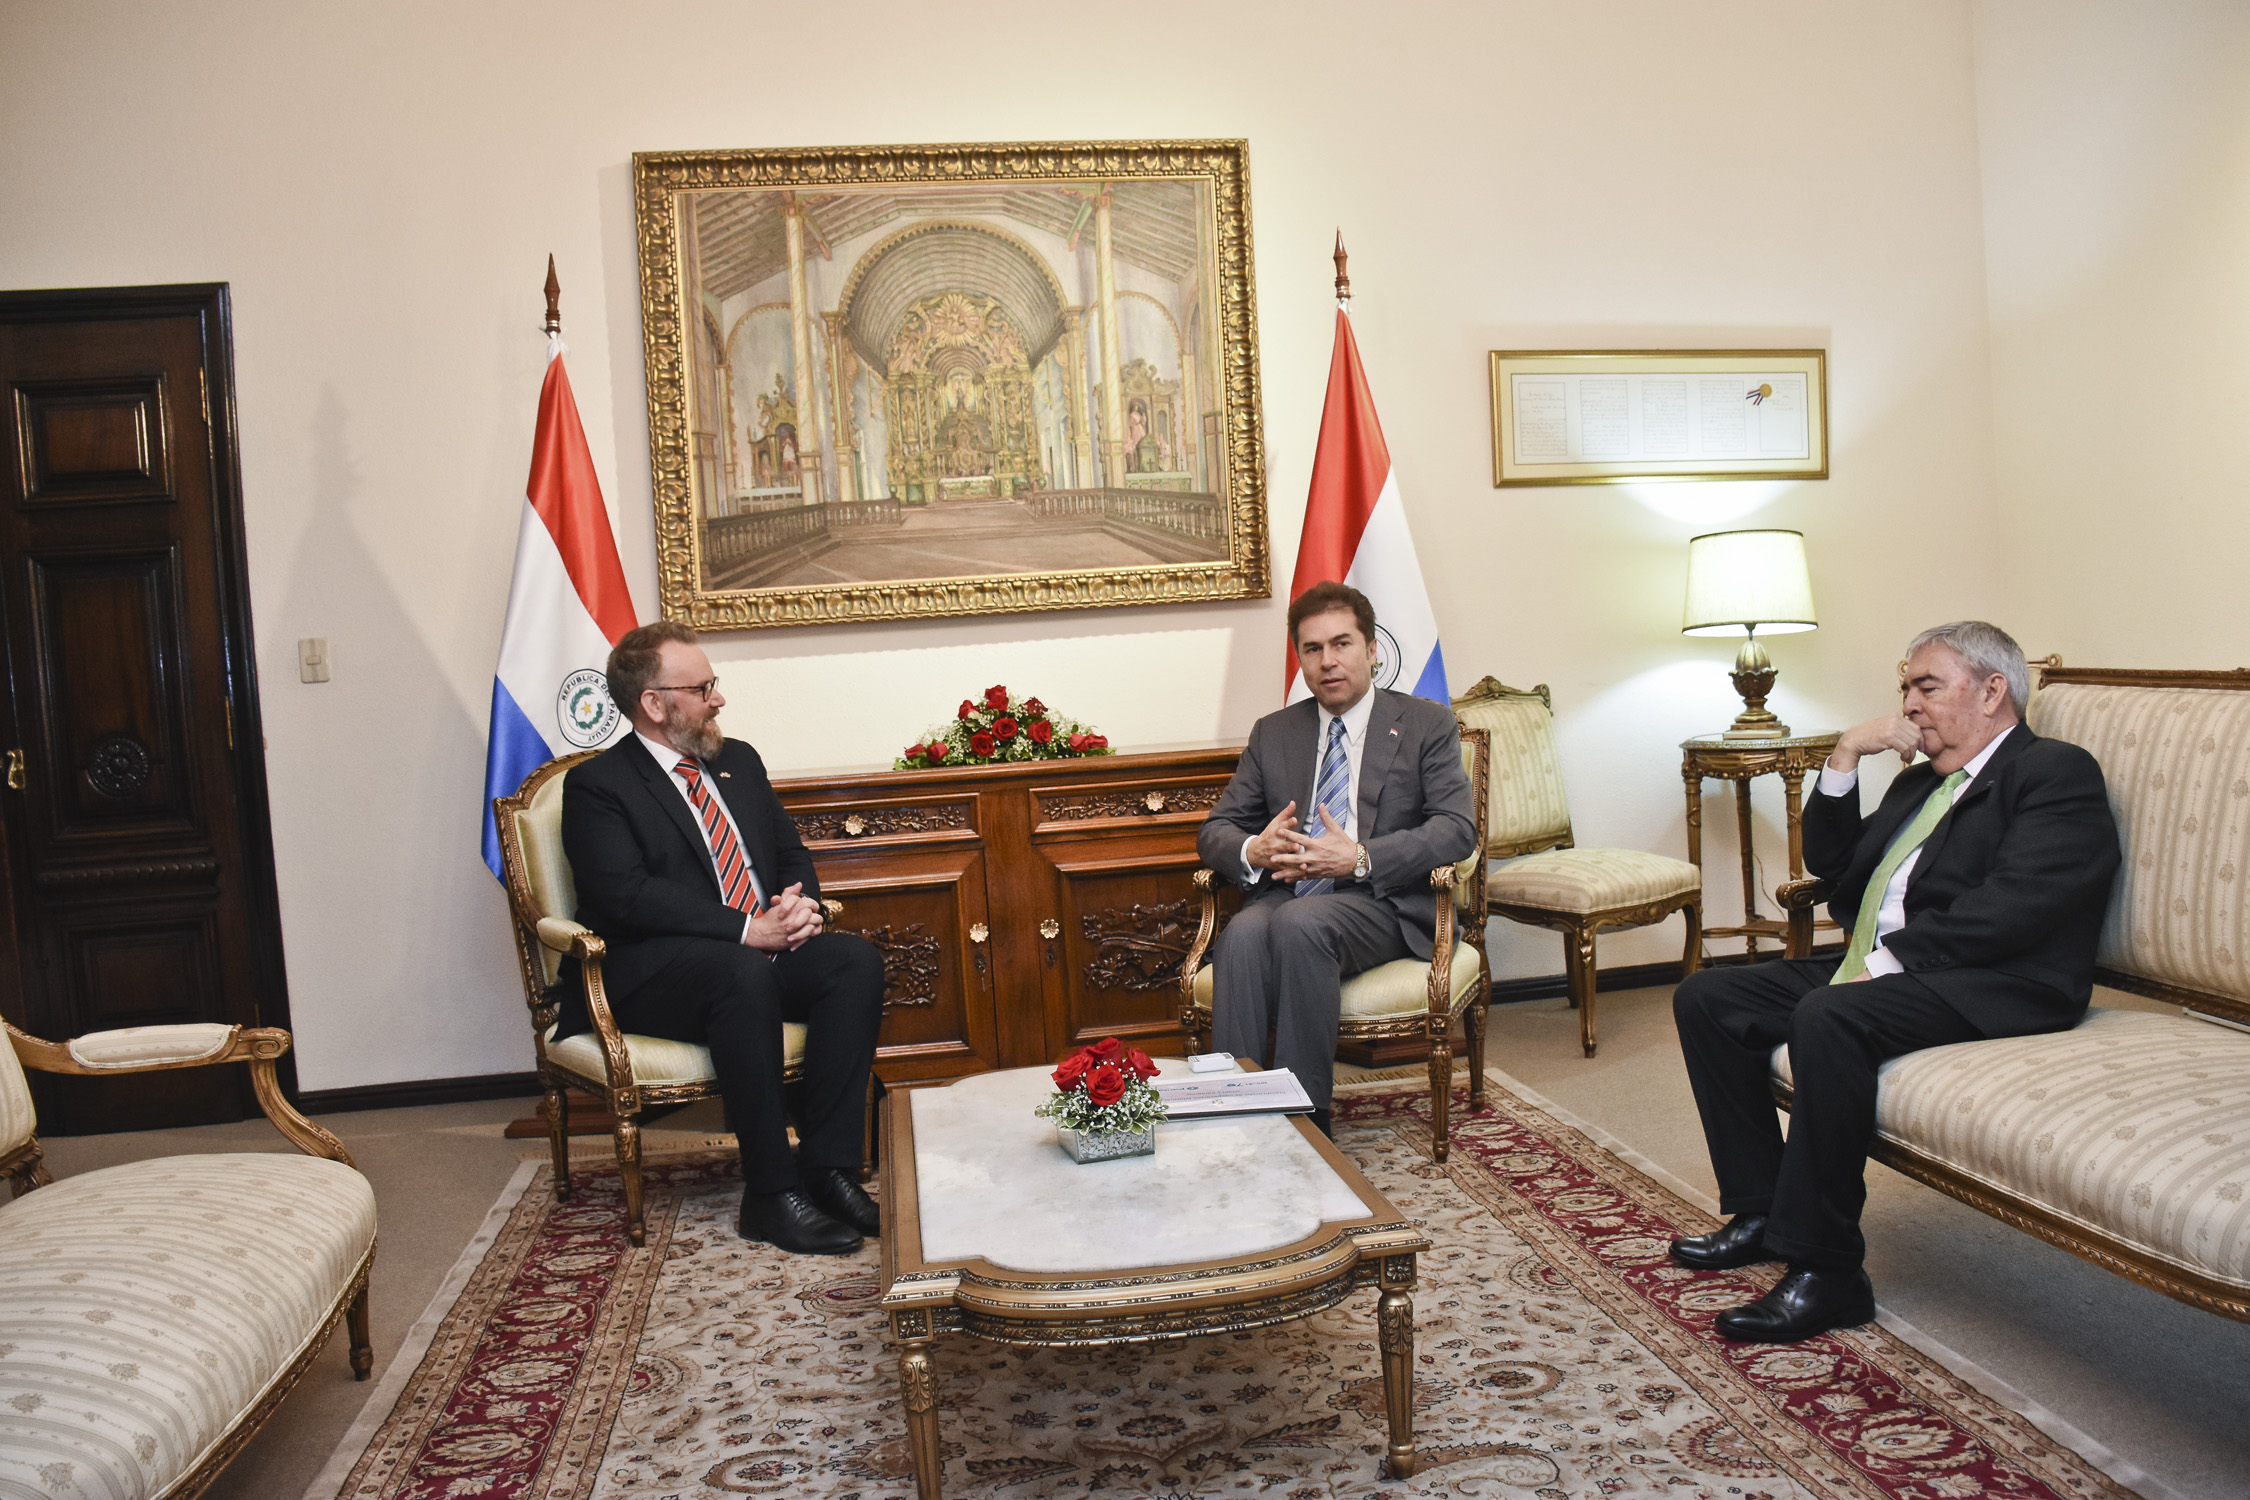 Gran Bretaña brinda su apoyo y felicita al Paraguay por decisión apegada al derecho internacional